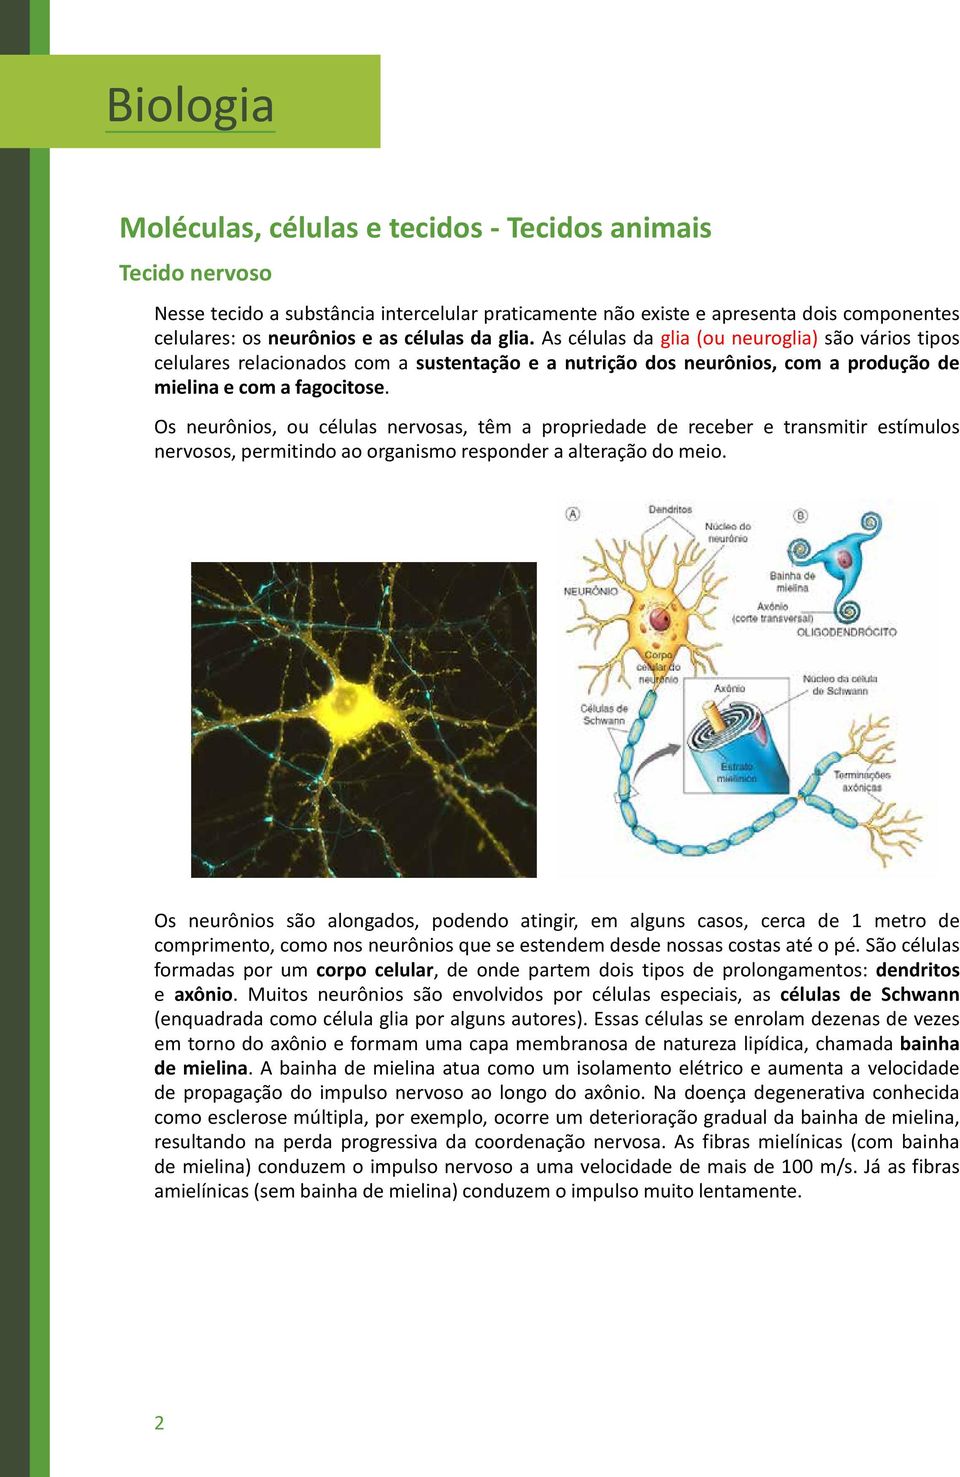 Os neurônios, ou células nervosas, têm a propriedade de receber e transmitir estímulos nervosos, permitindo ao organismo responder a alteração do meio.